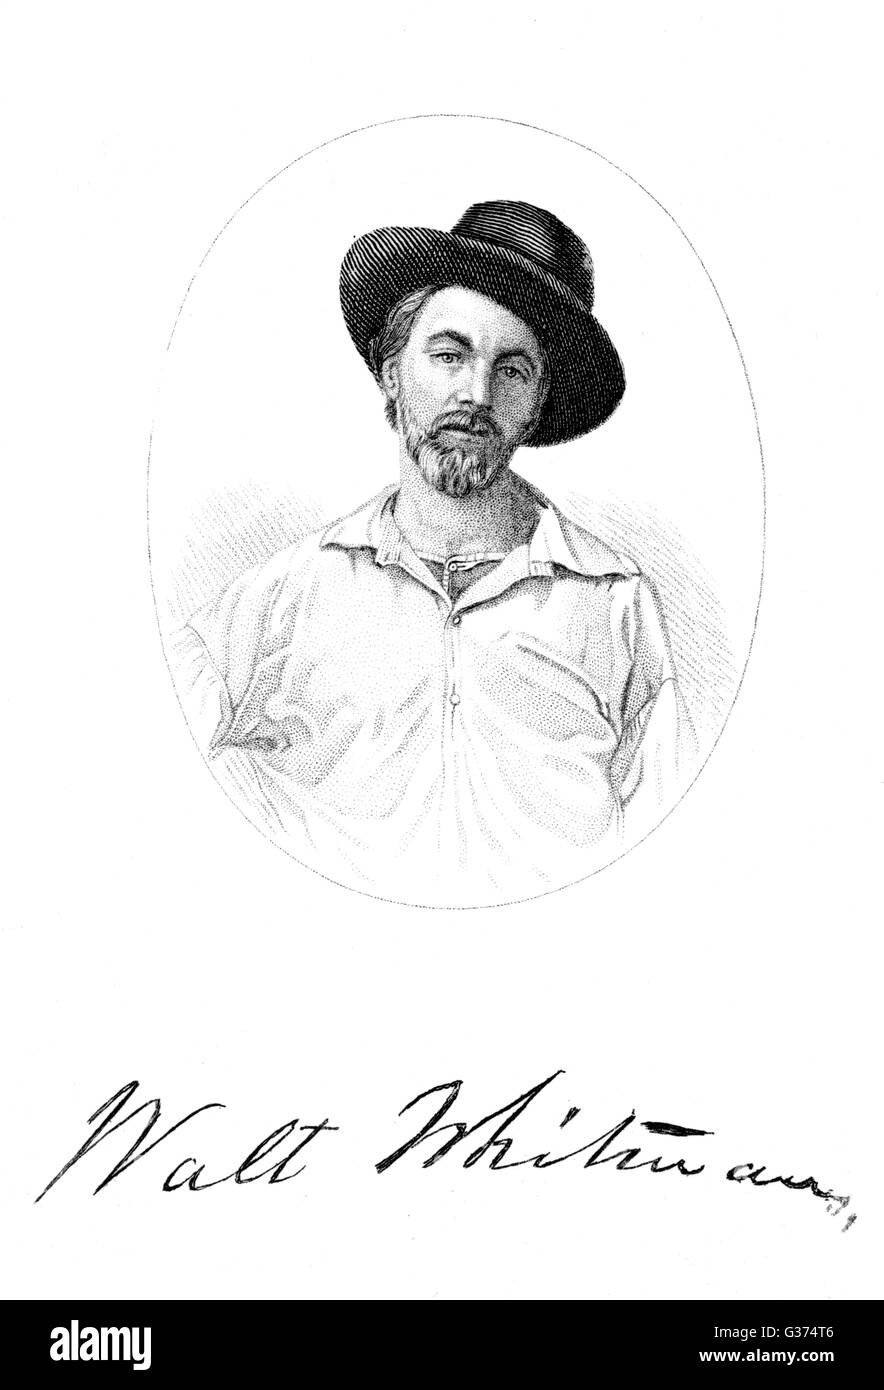 WALT WHITMAN amerikanischer Dichter mit seiner Unterschrift Datum: 1819-1892 Stockfoto